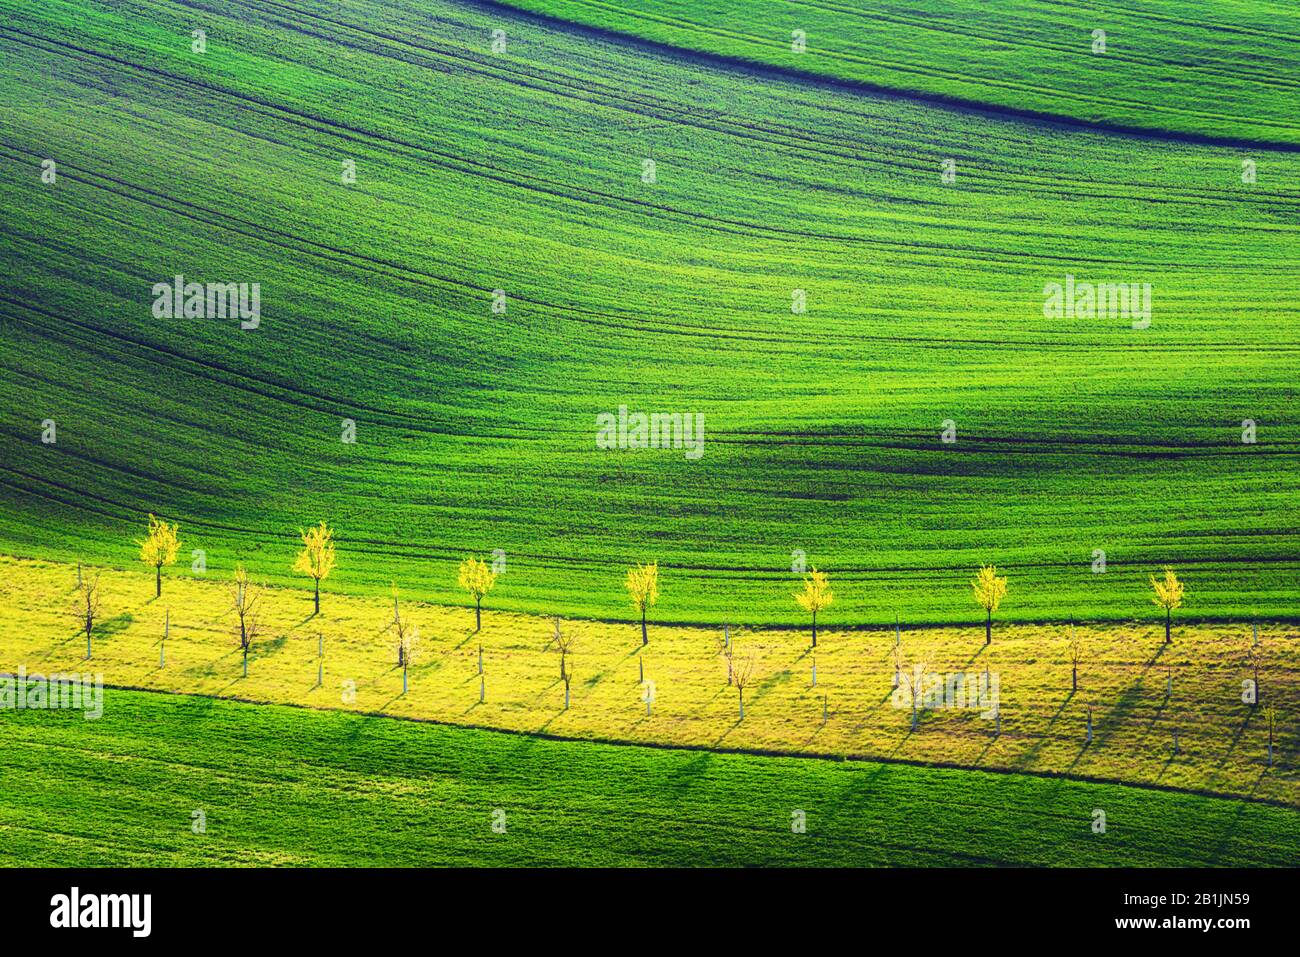 Paisaje rural de primavera con colinas de rayas de colores y jardín de árboles. Olas verdes y marrones de los campos agrícolas del sur de Moravia, República Checa Foto de stock